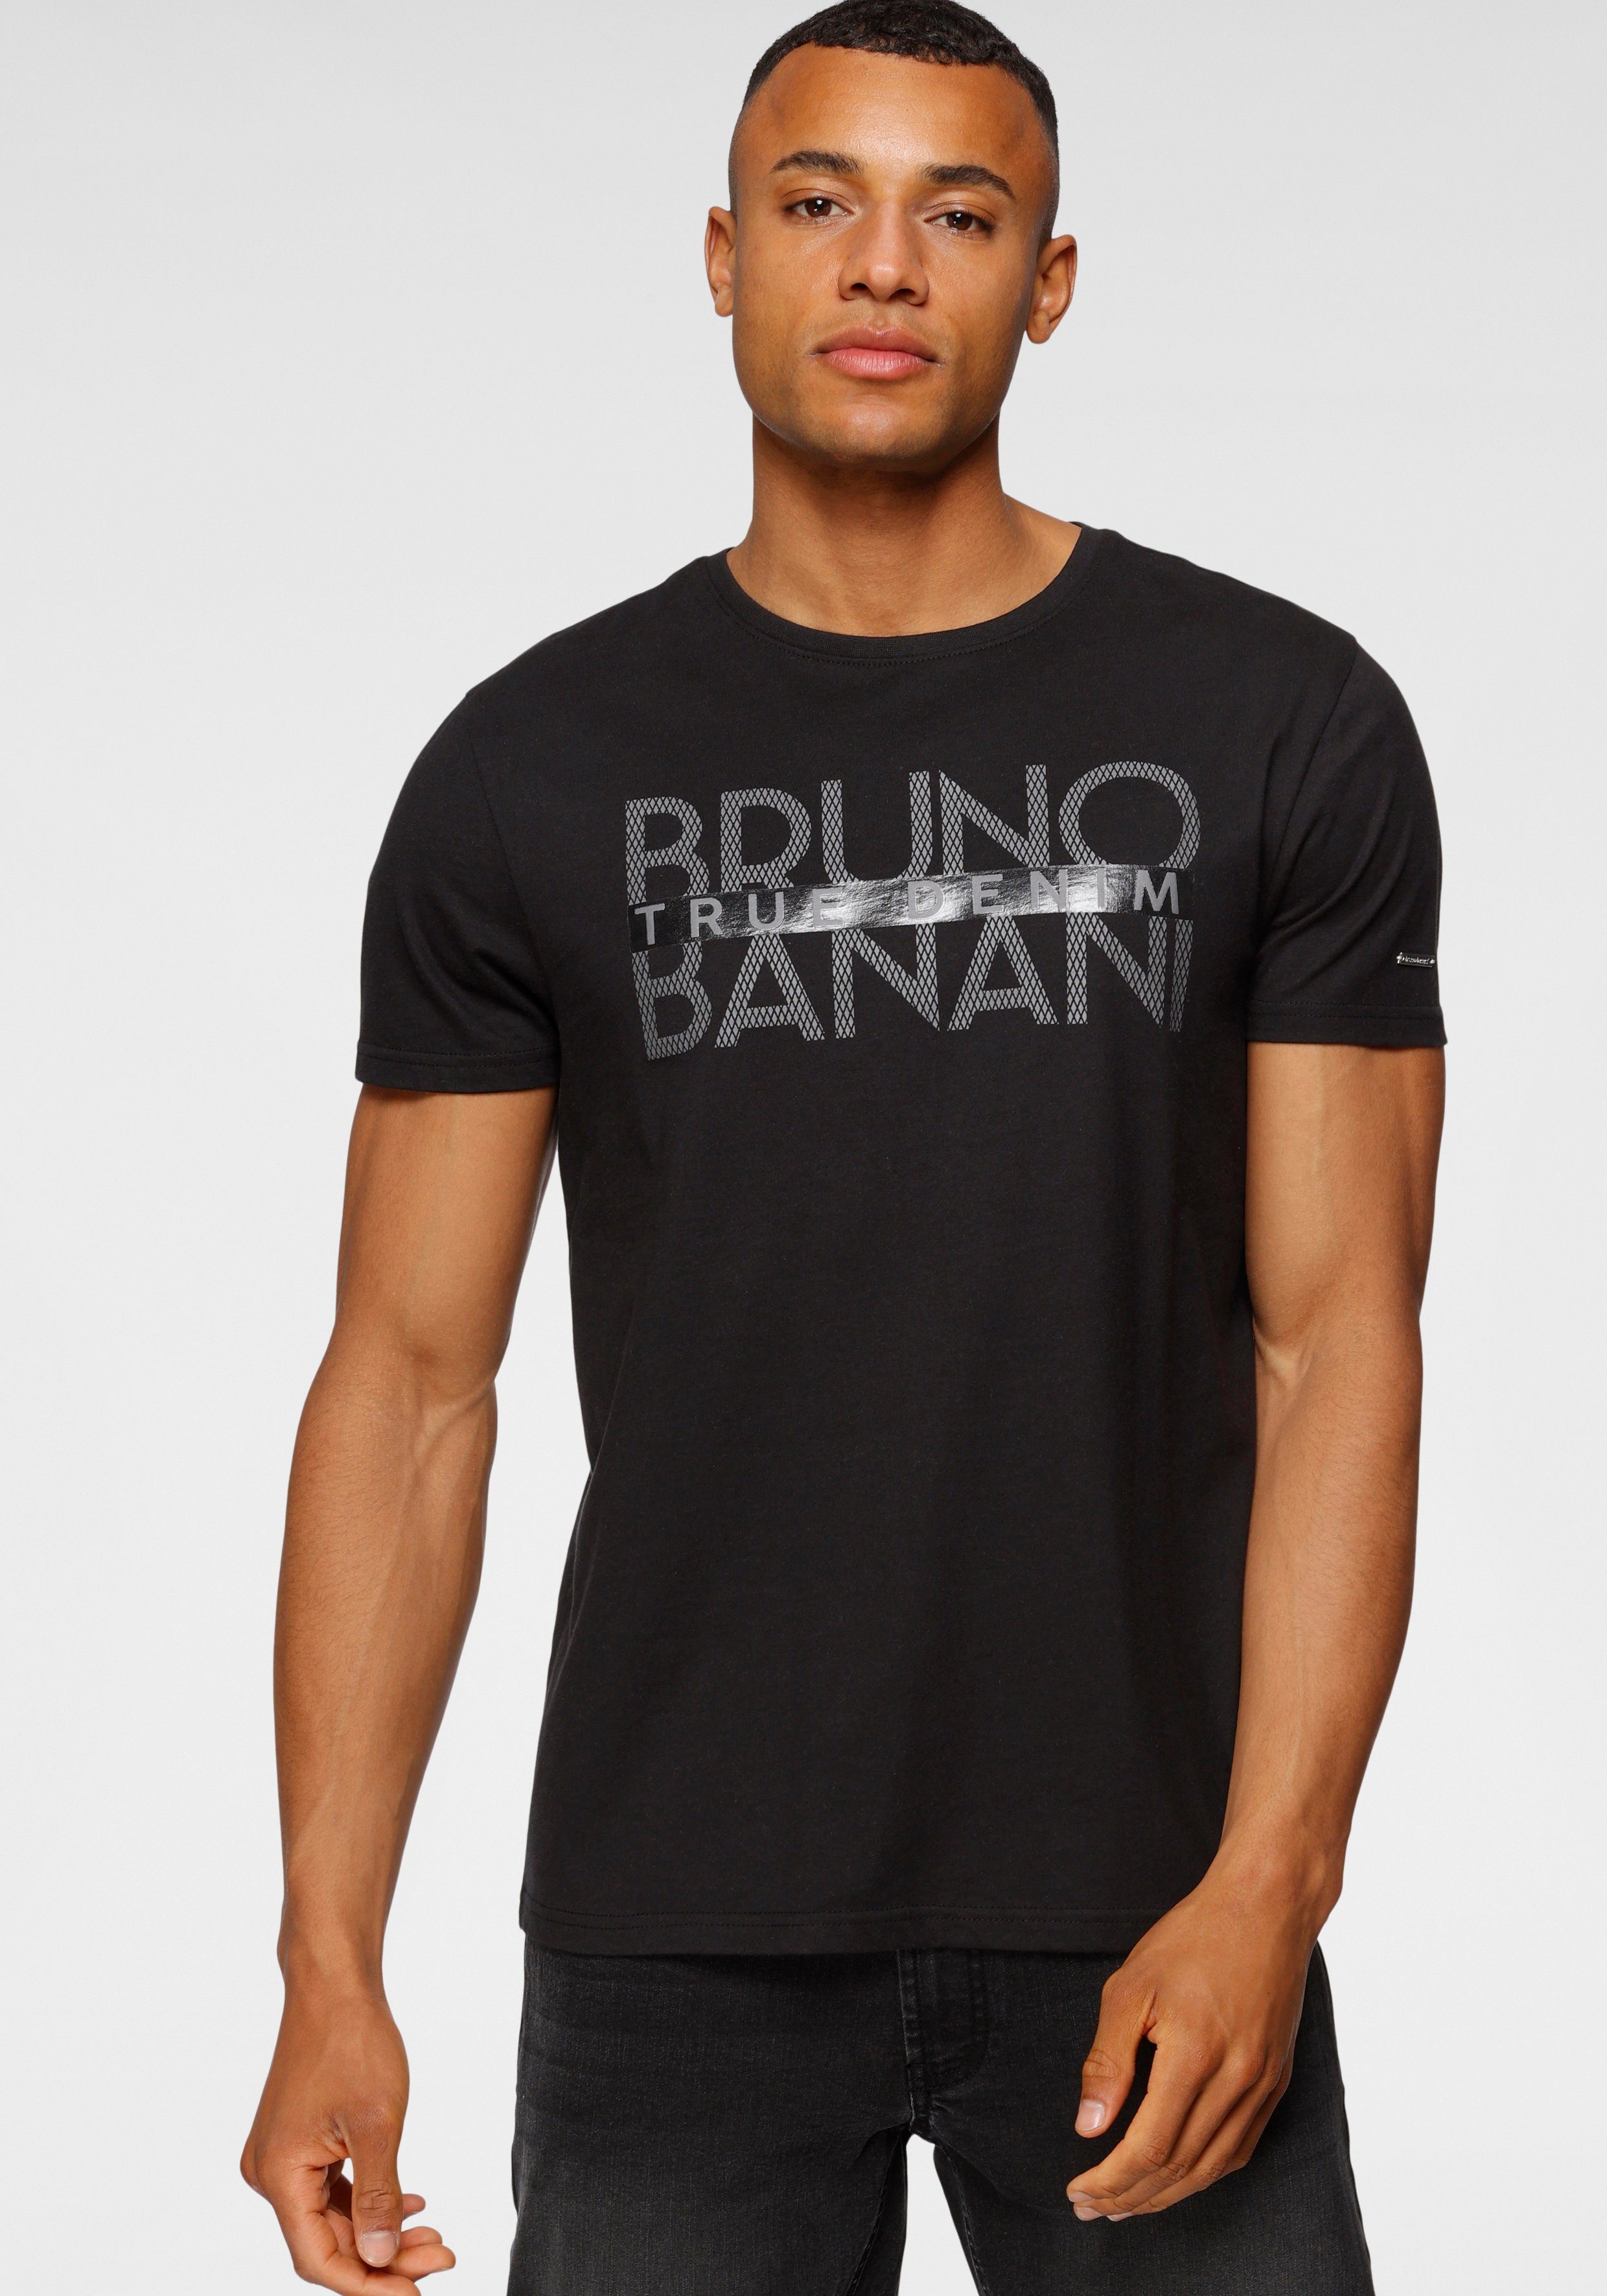 Bruno Banani T-Shirt mit Print schwarz glänzendem